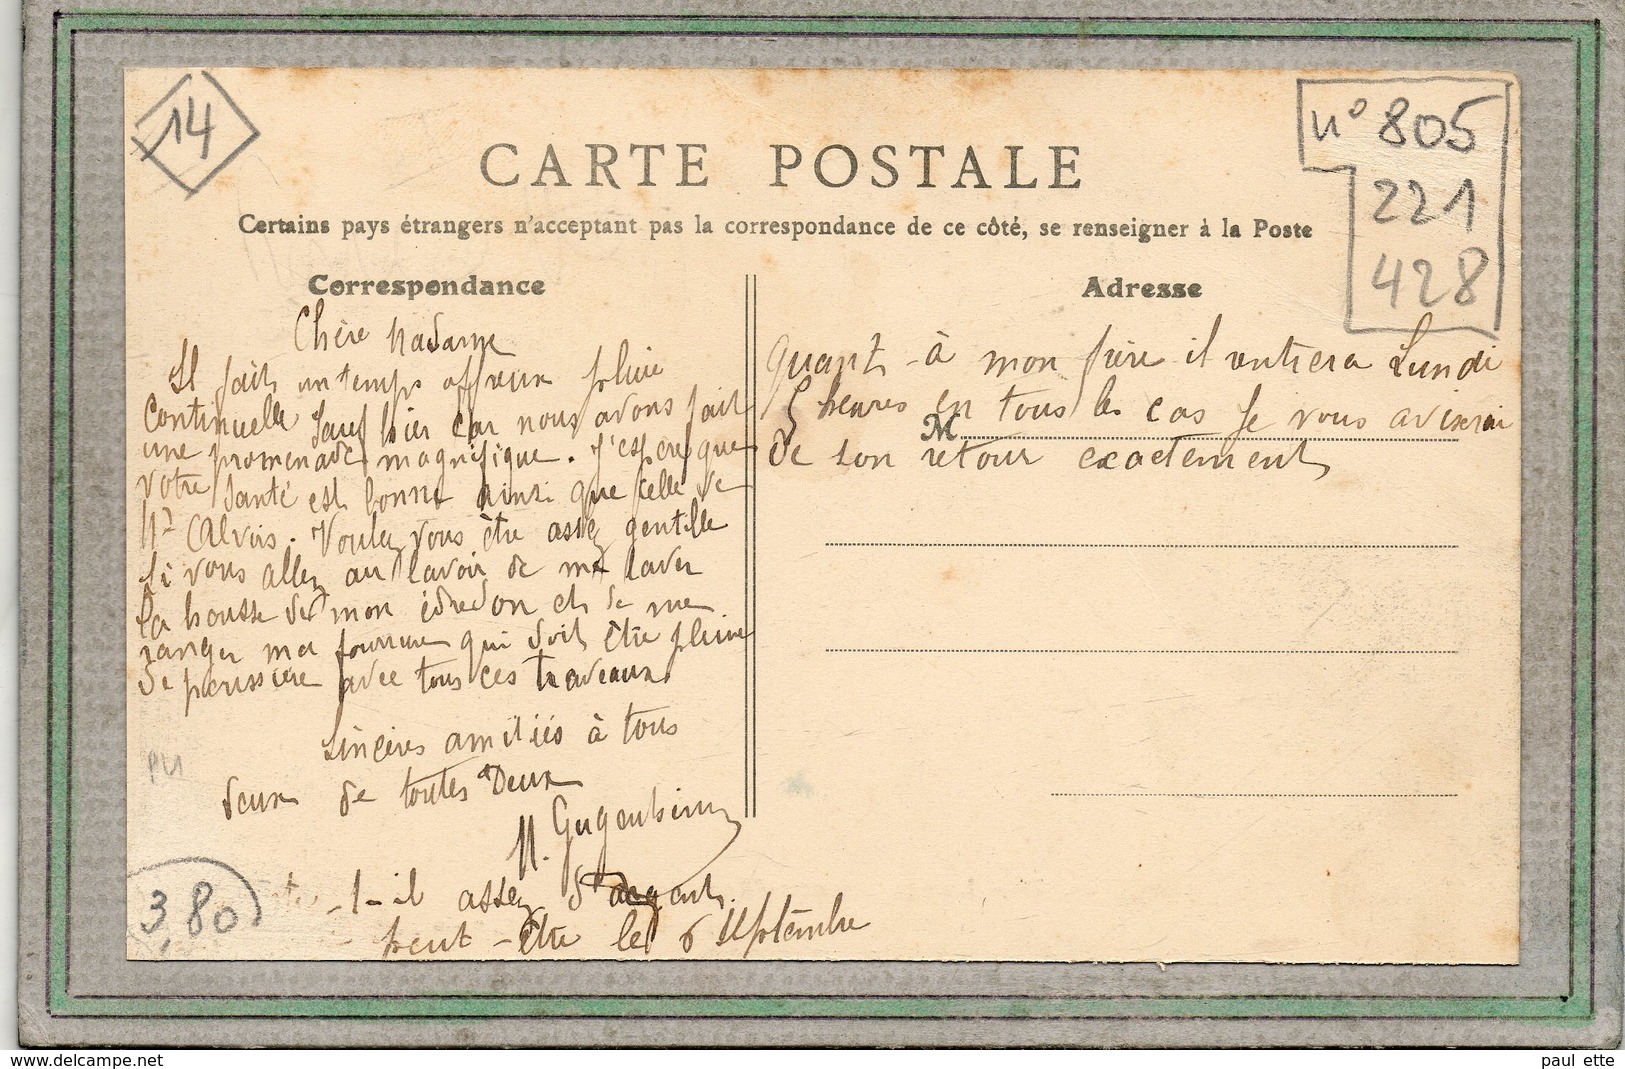 CPA - LANGRUNE-sur-MER (14) - Aspect De La Roulotte De Romanichel à L'entrée Du Village Du Petit Chapeau En 1910 - Villerville